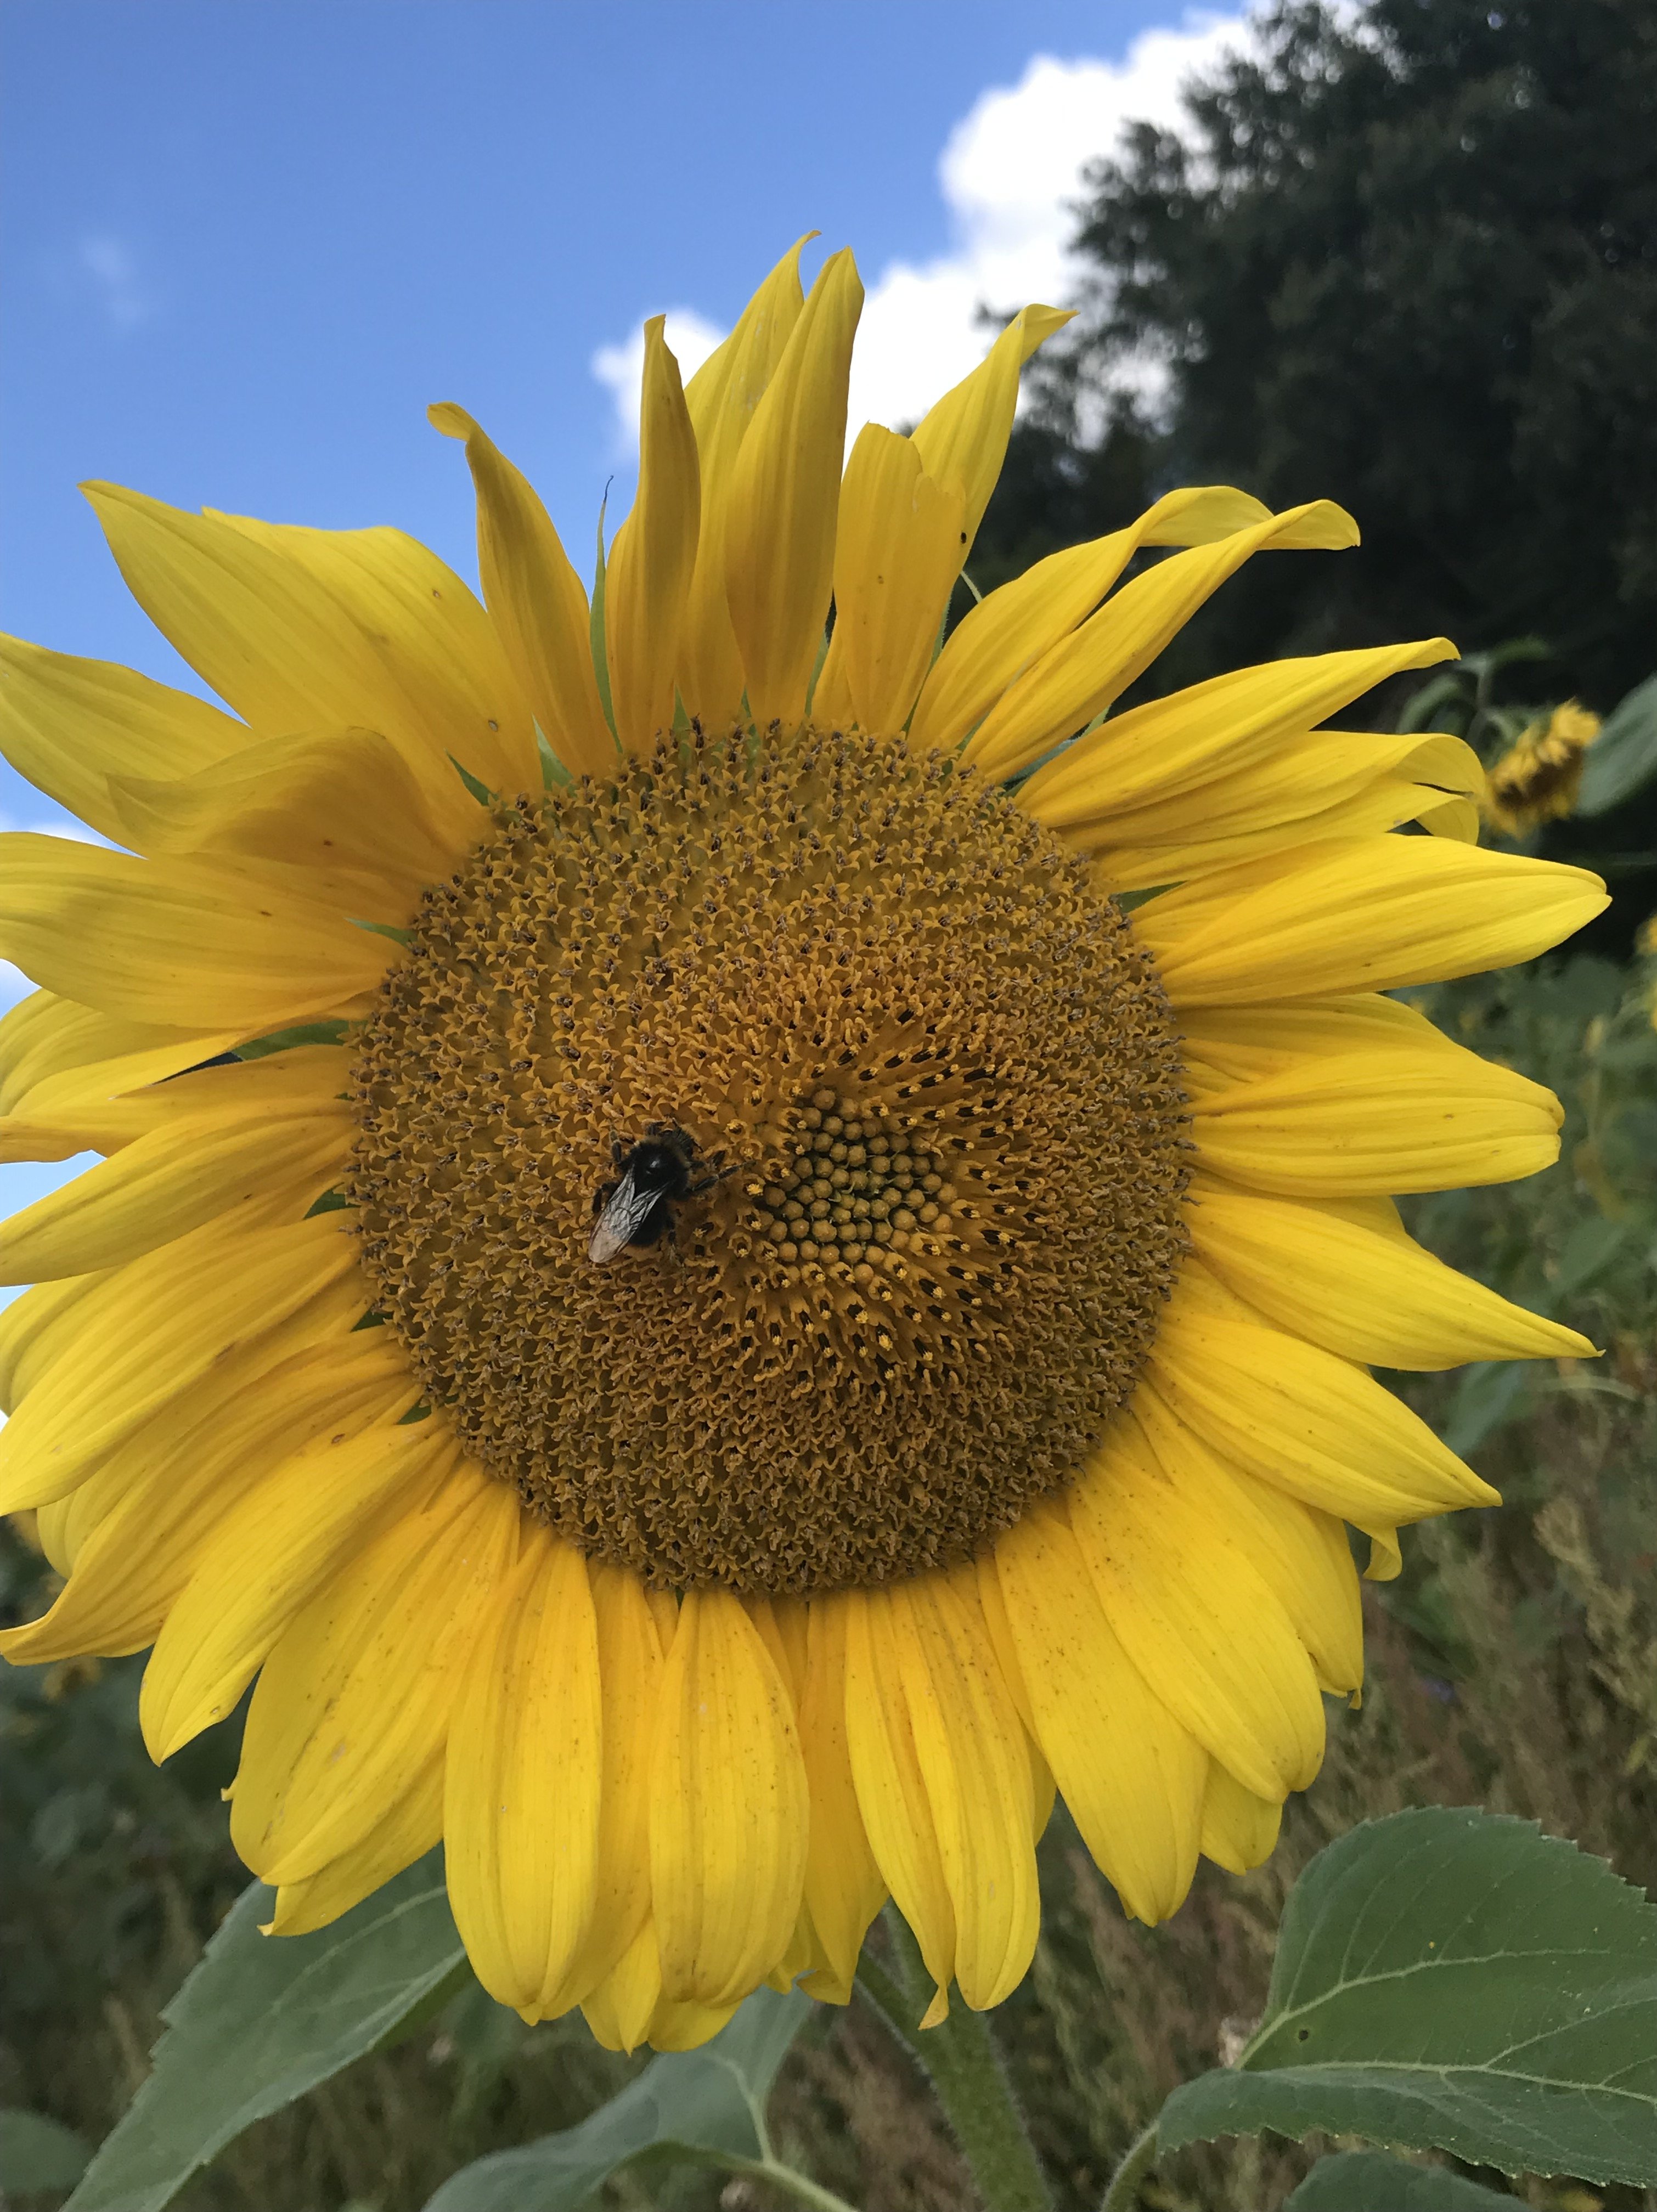 Auf diesem Bild sieht man eine Nahaufnahme einer Sonnenblume